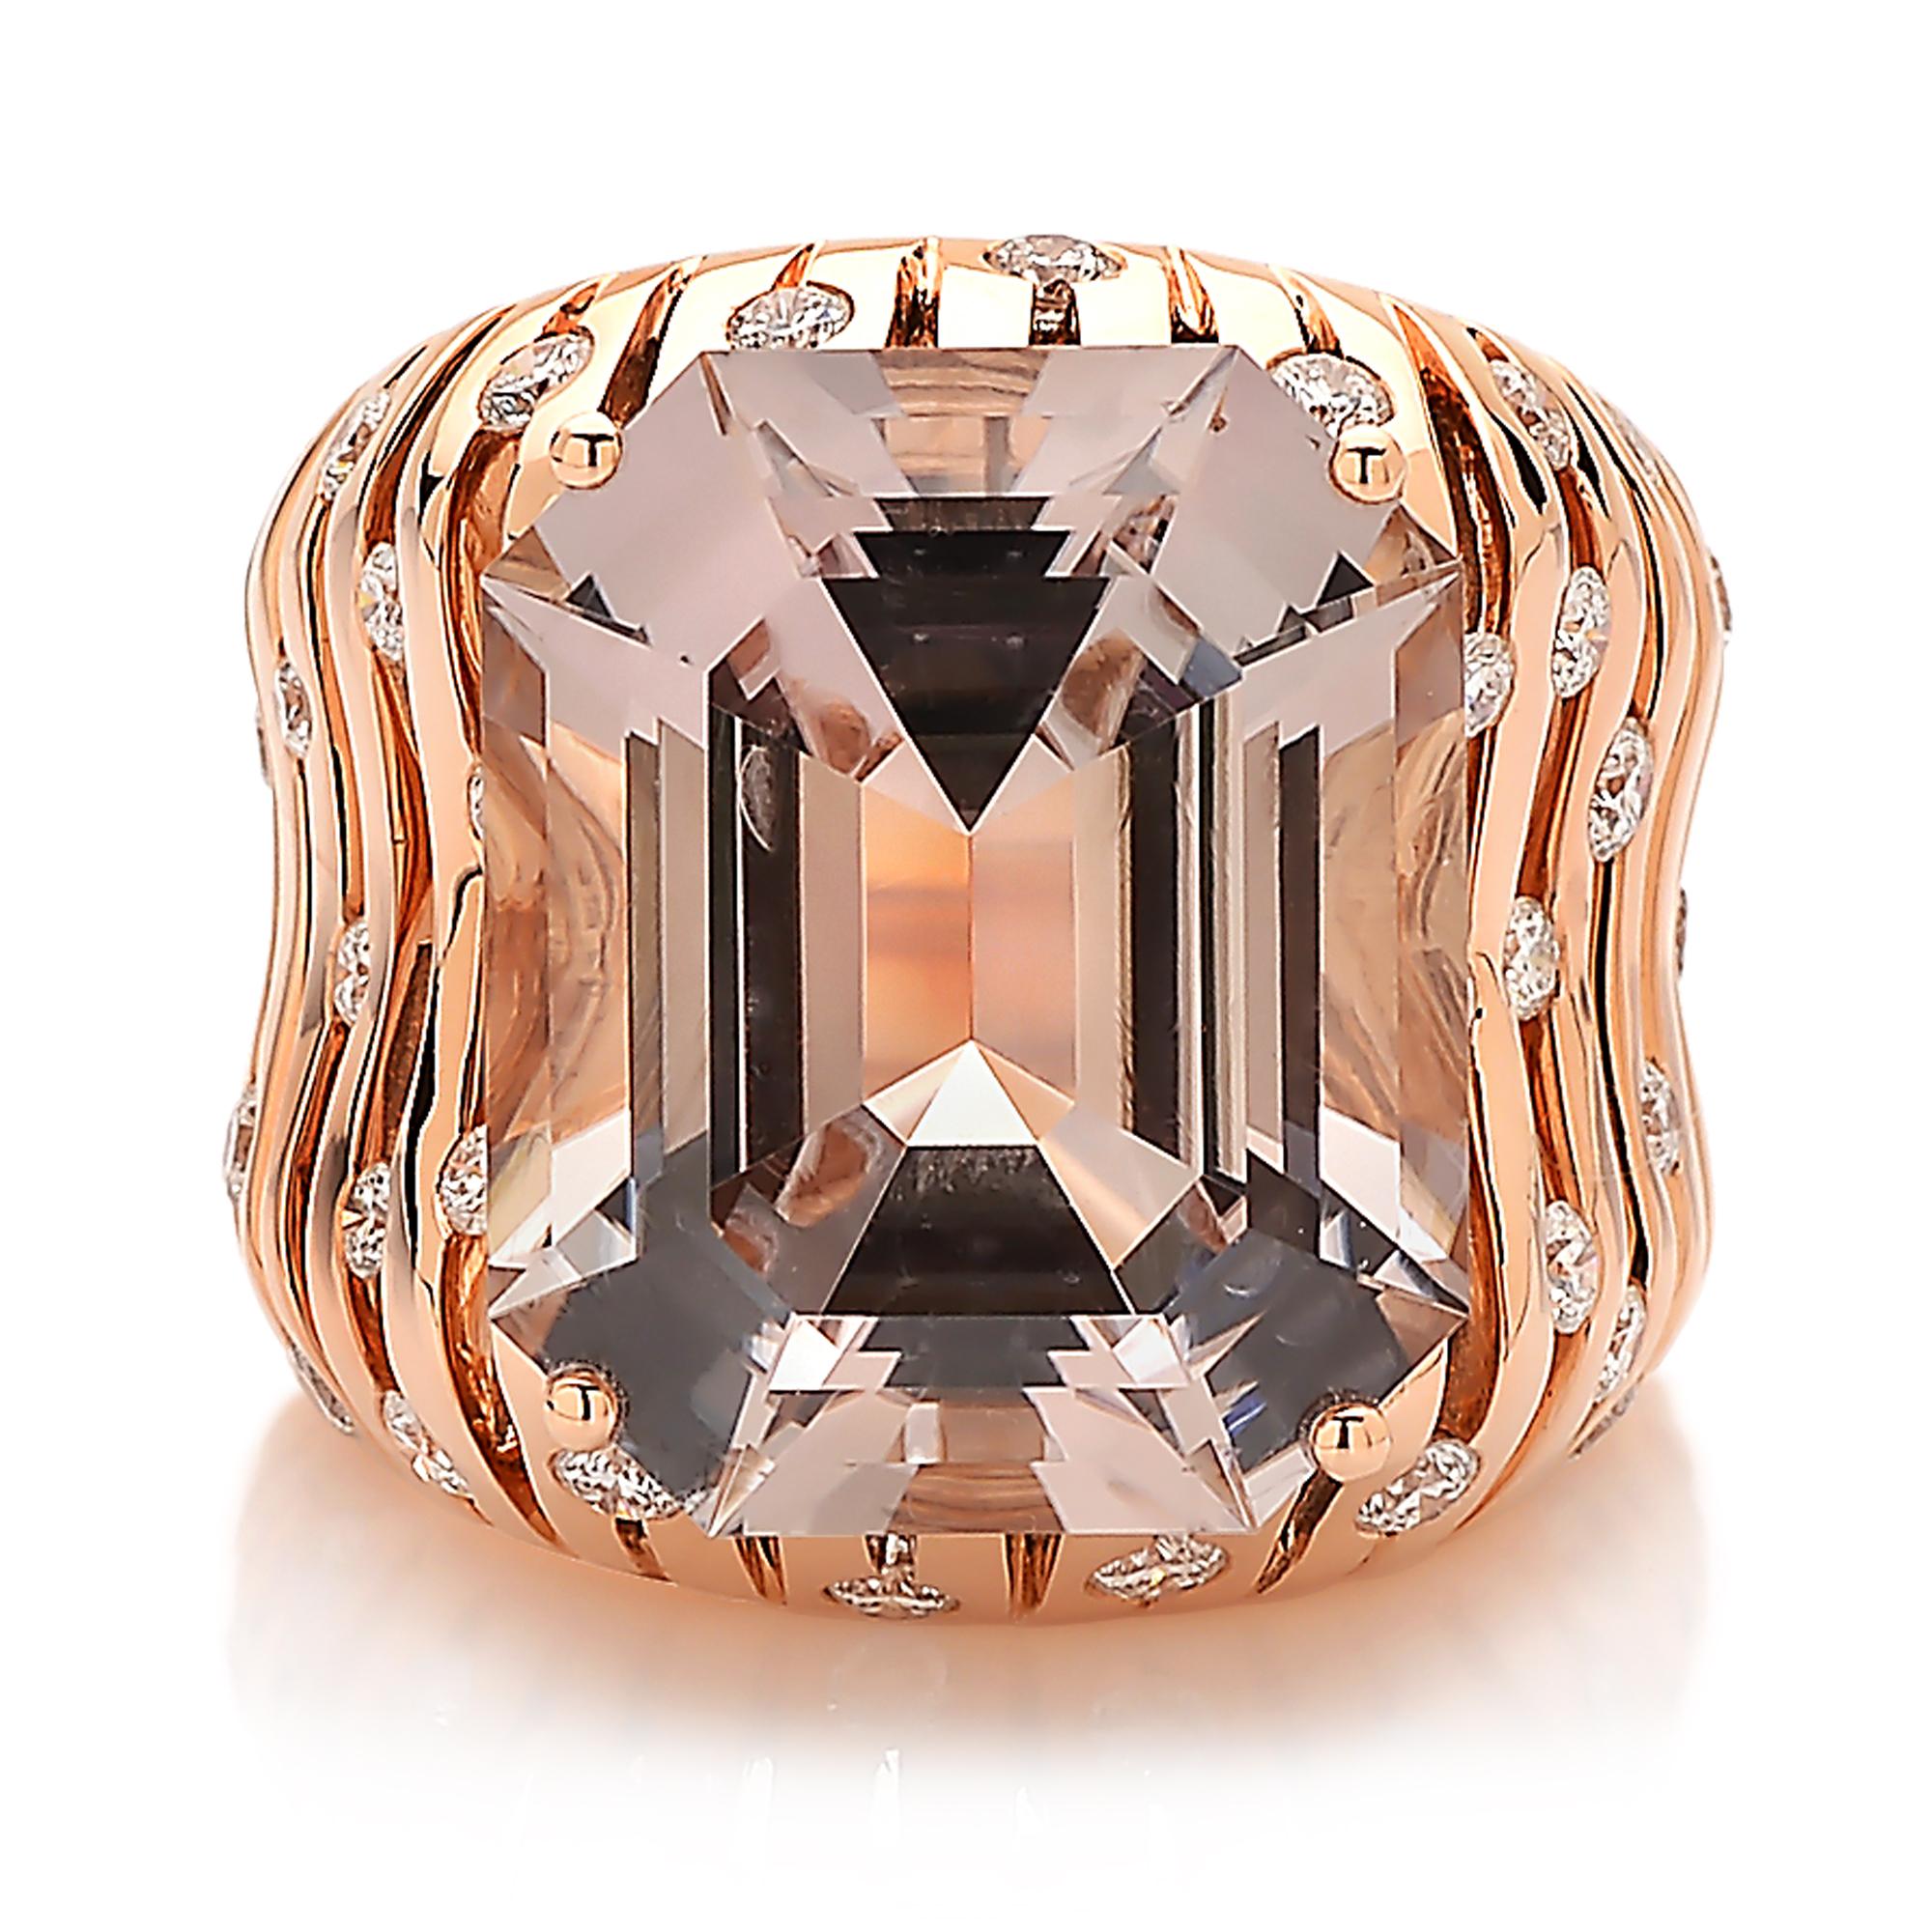 Contemporary Paolo Costagli Prosecco Tourmaline and Diamond 18 Karat Rose Gold Ring